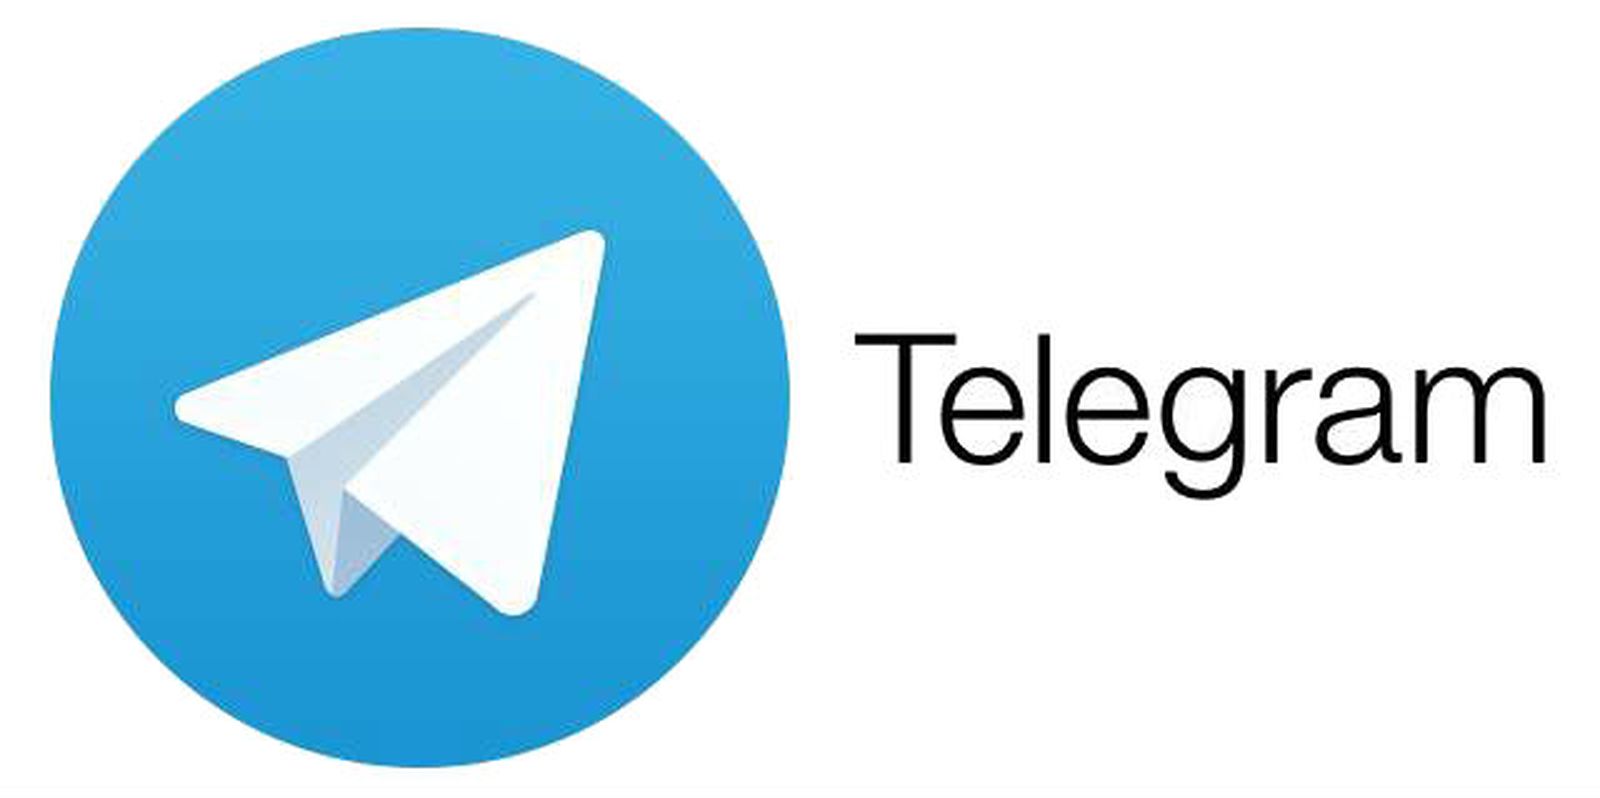 iphone telegram app